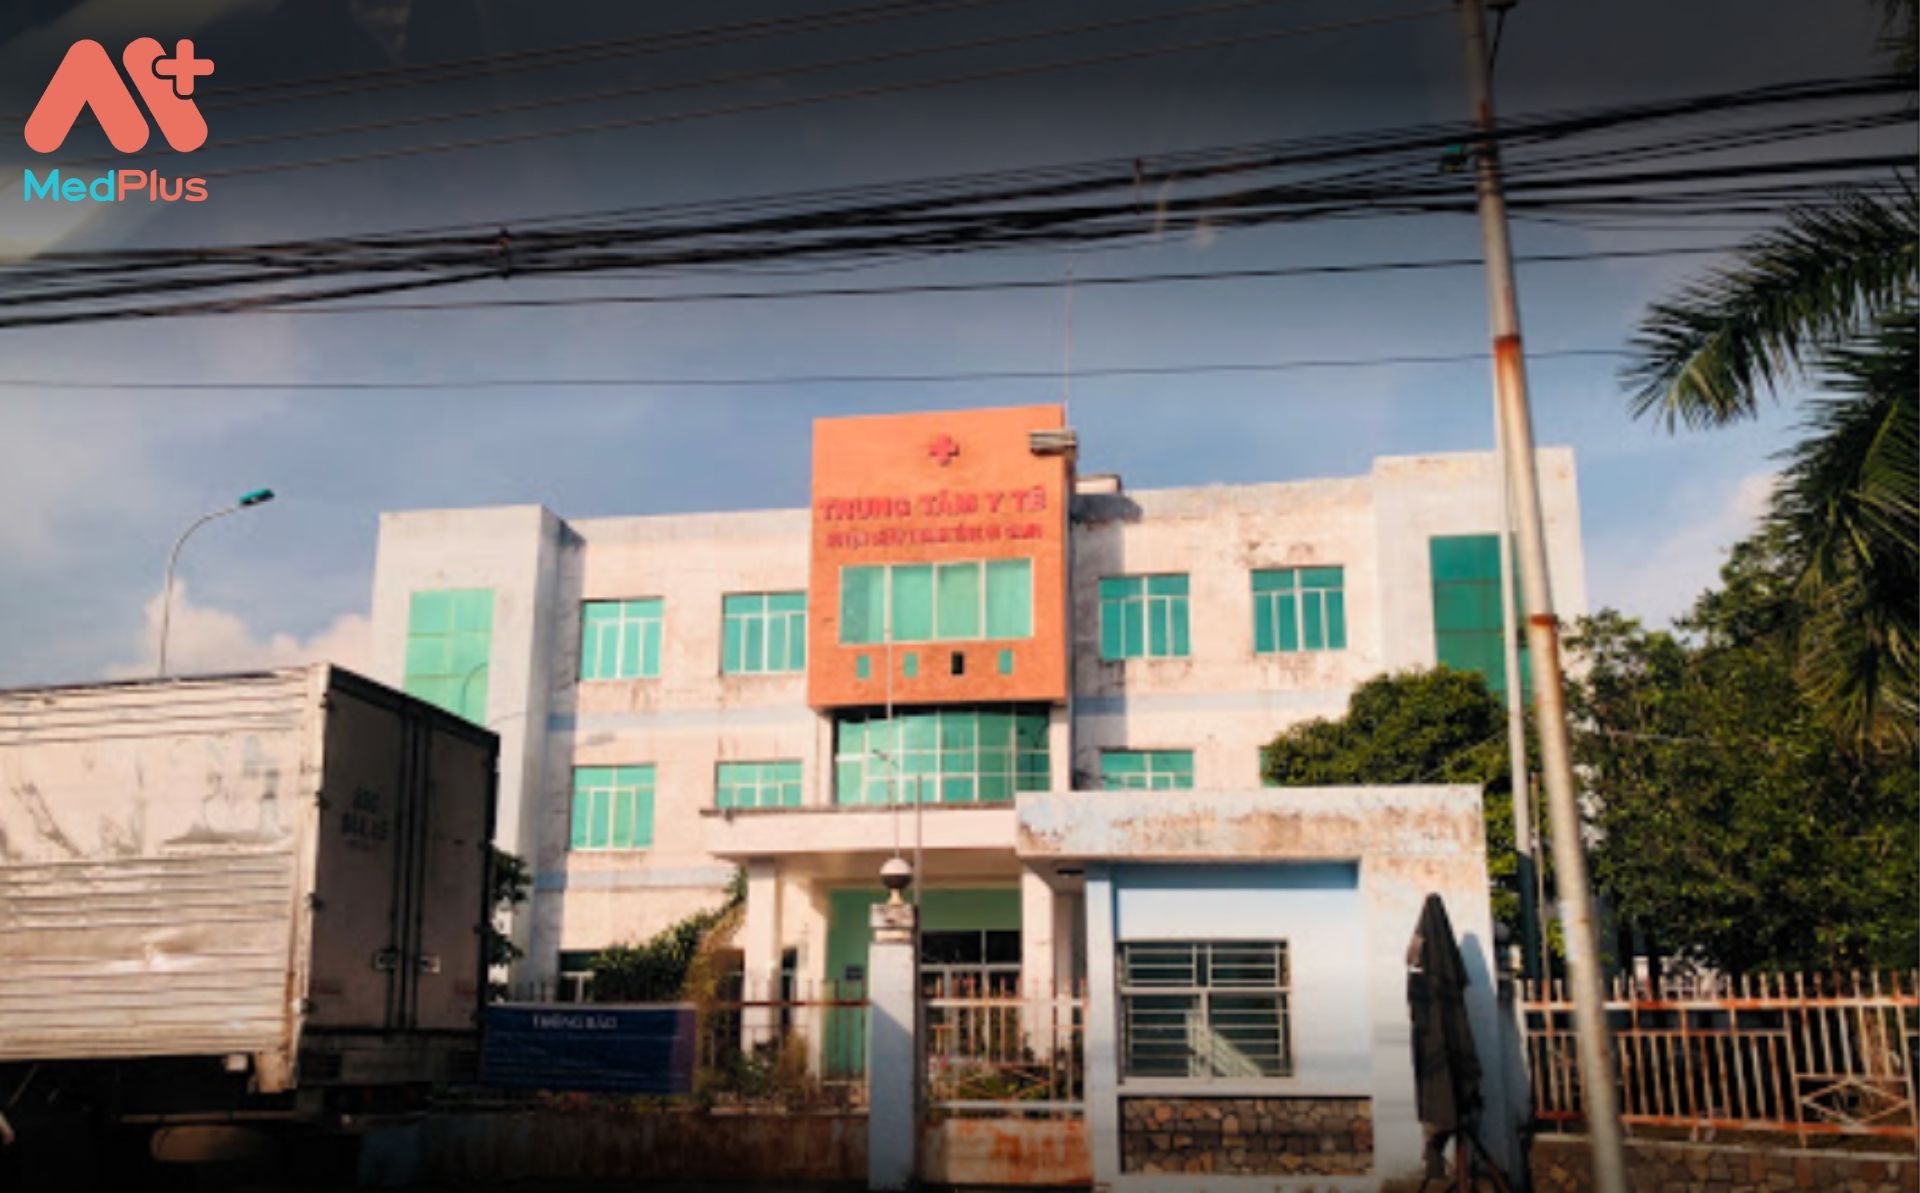 Trung tâm y tế huyện Châu Thành